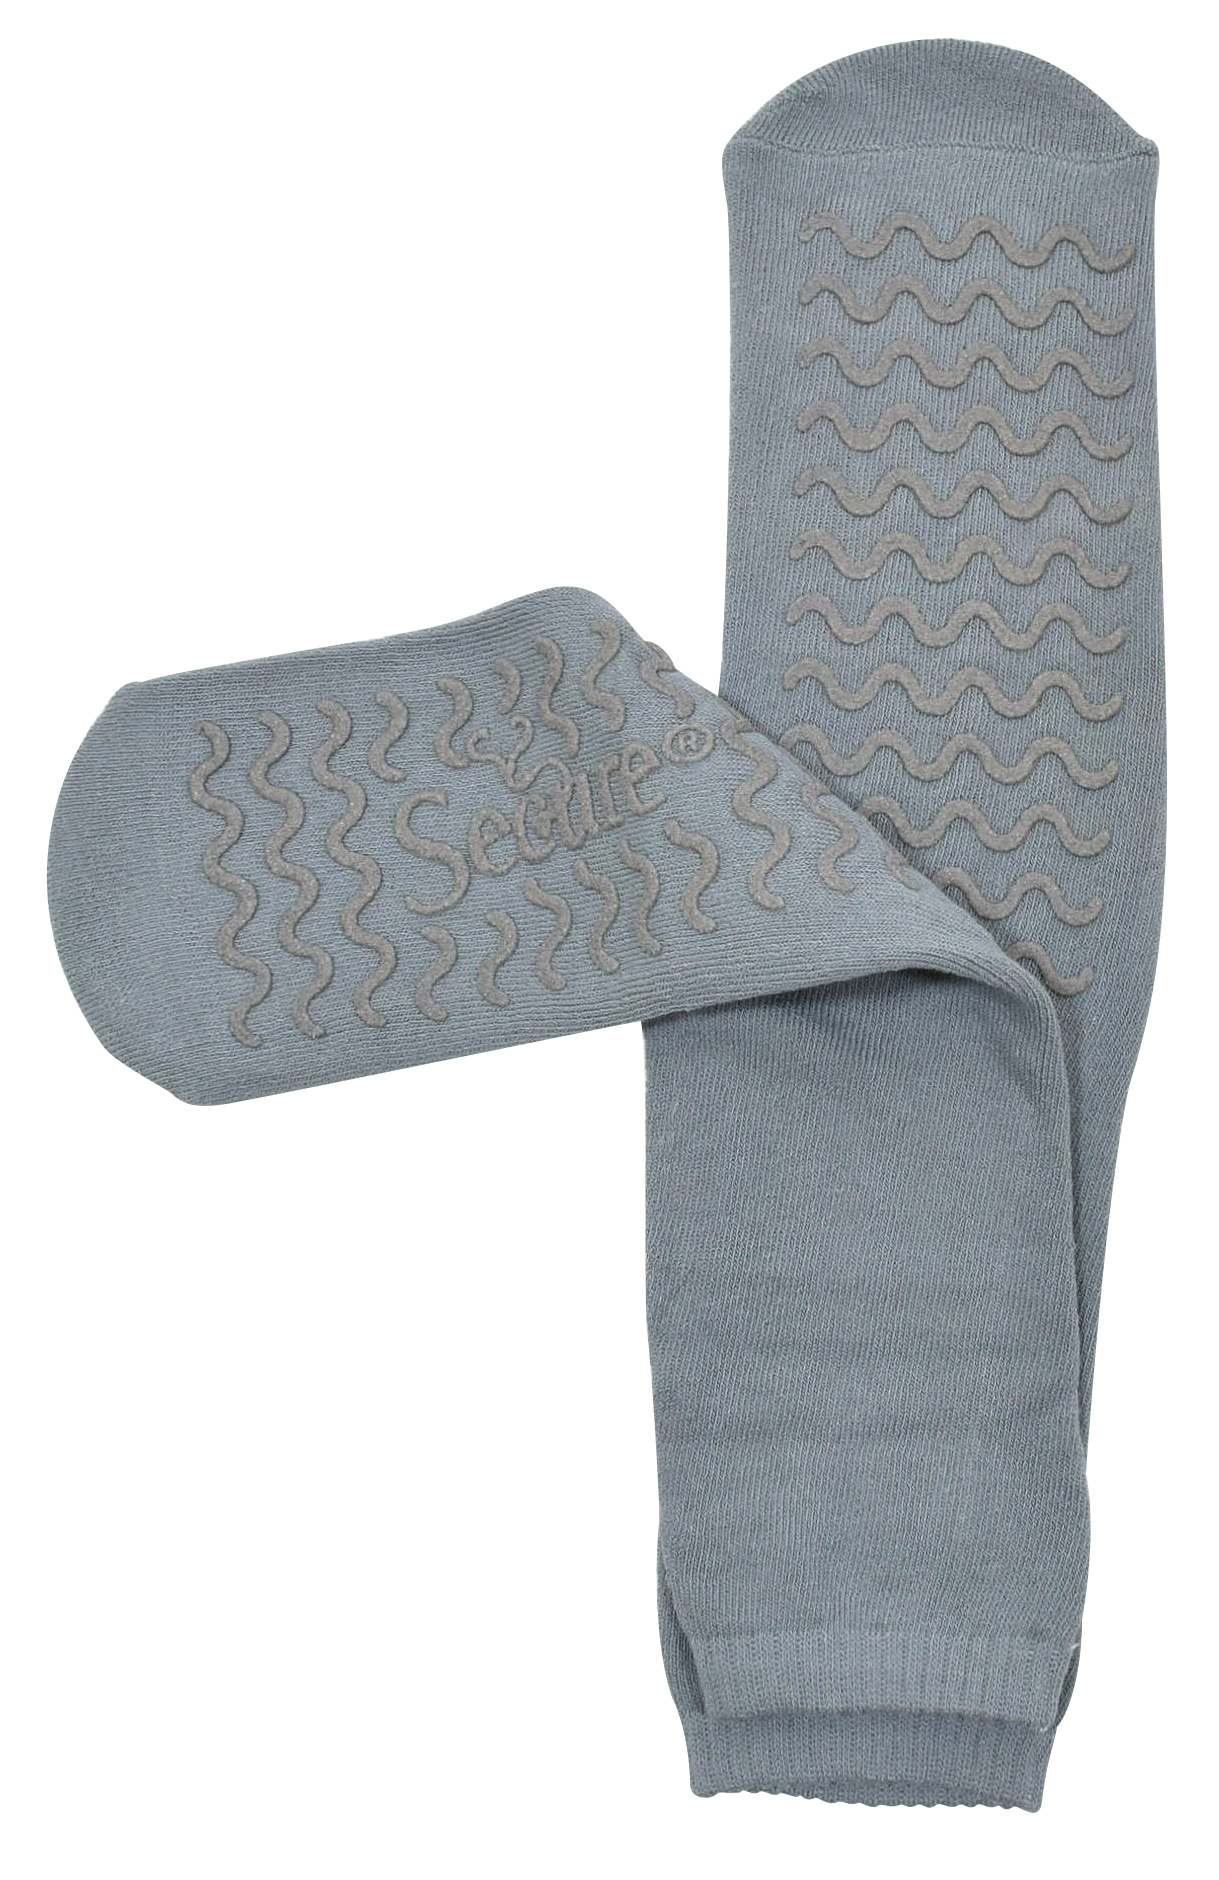 Hospital Socks / Non Slip Socks / Diabetic Safe Socks by Gripperz, Senior  Style